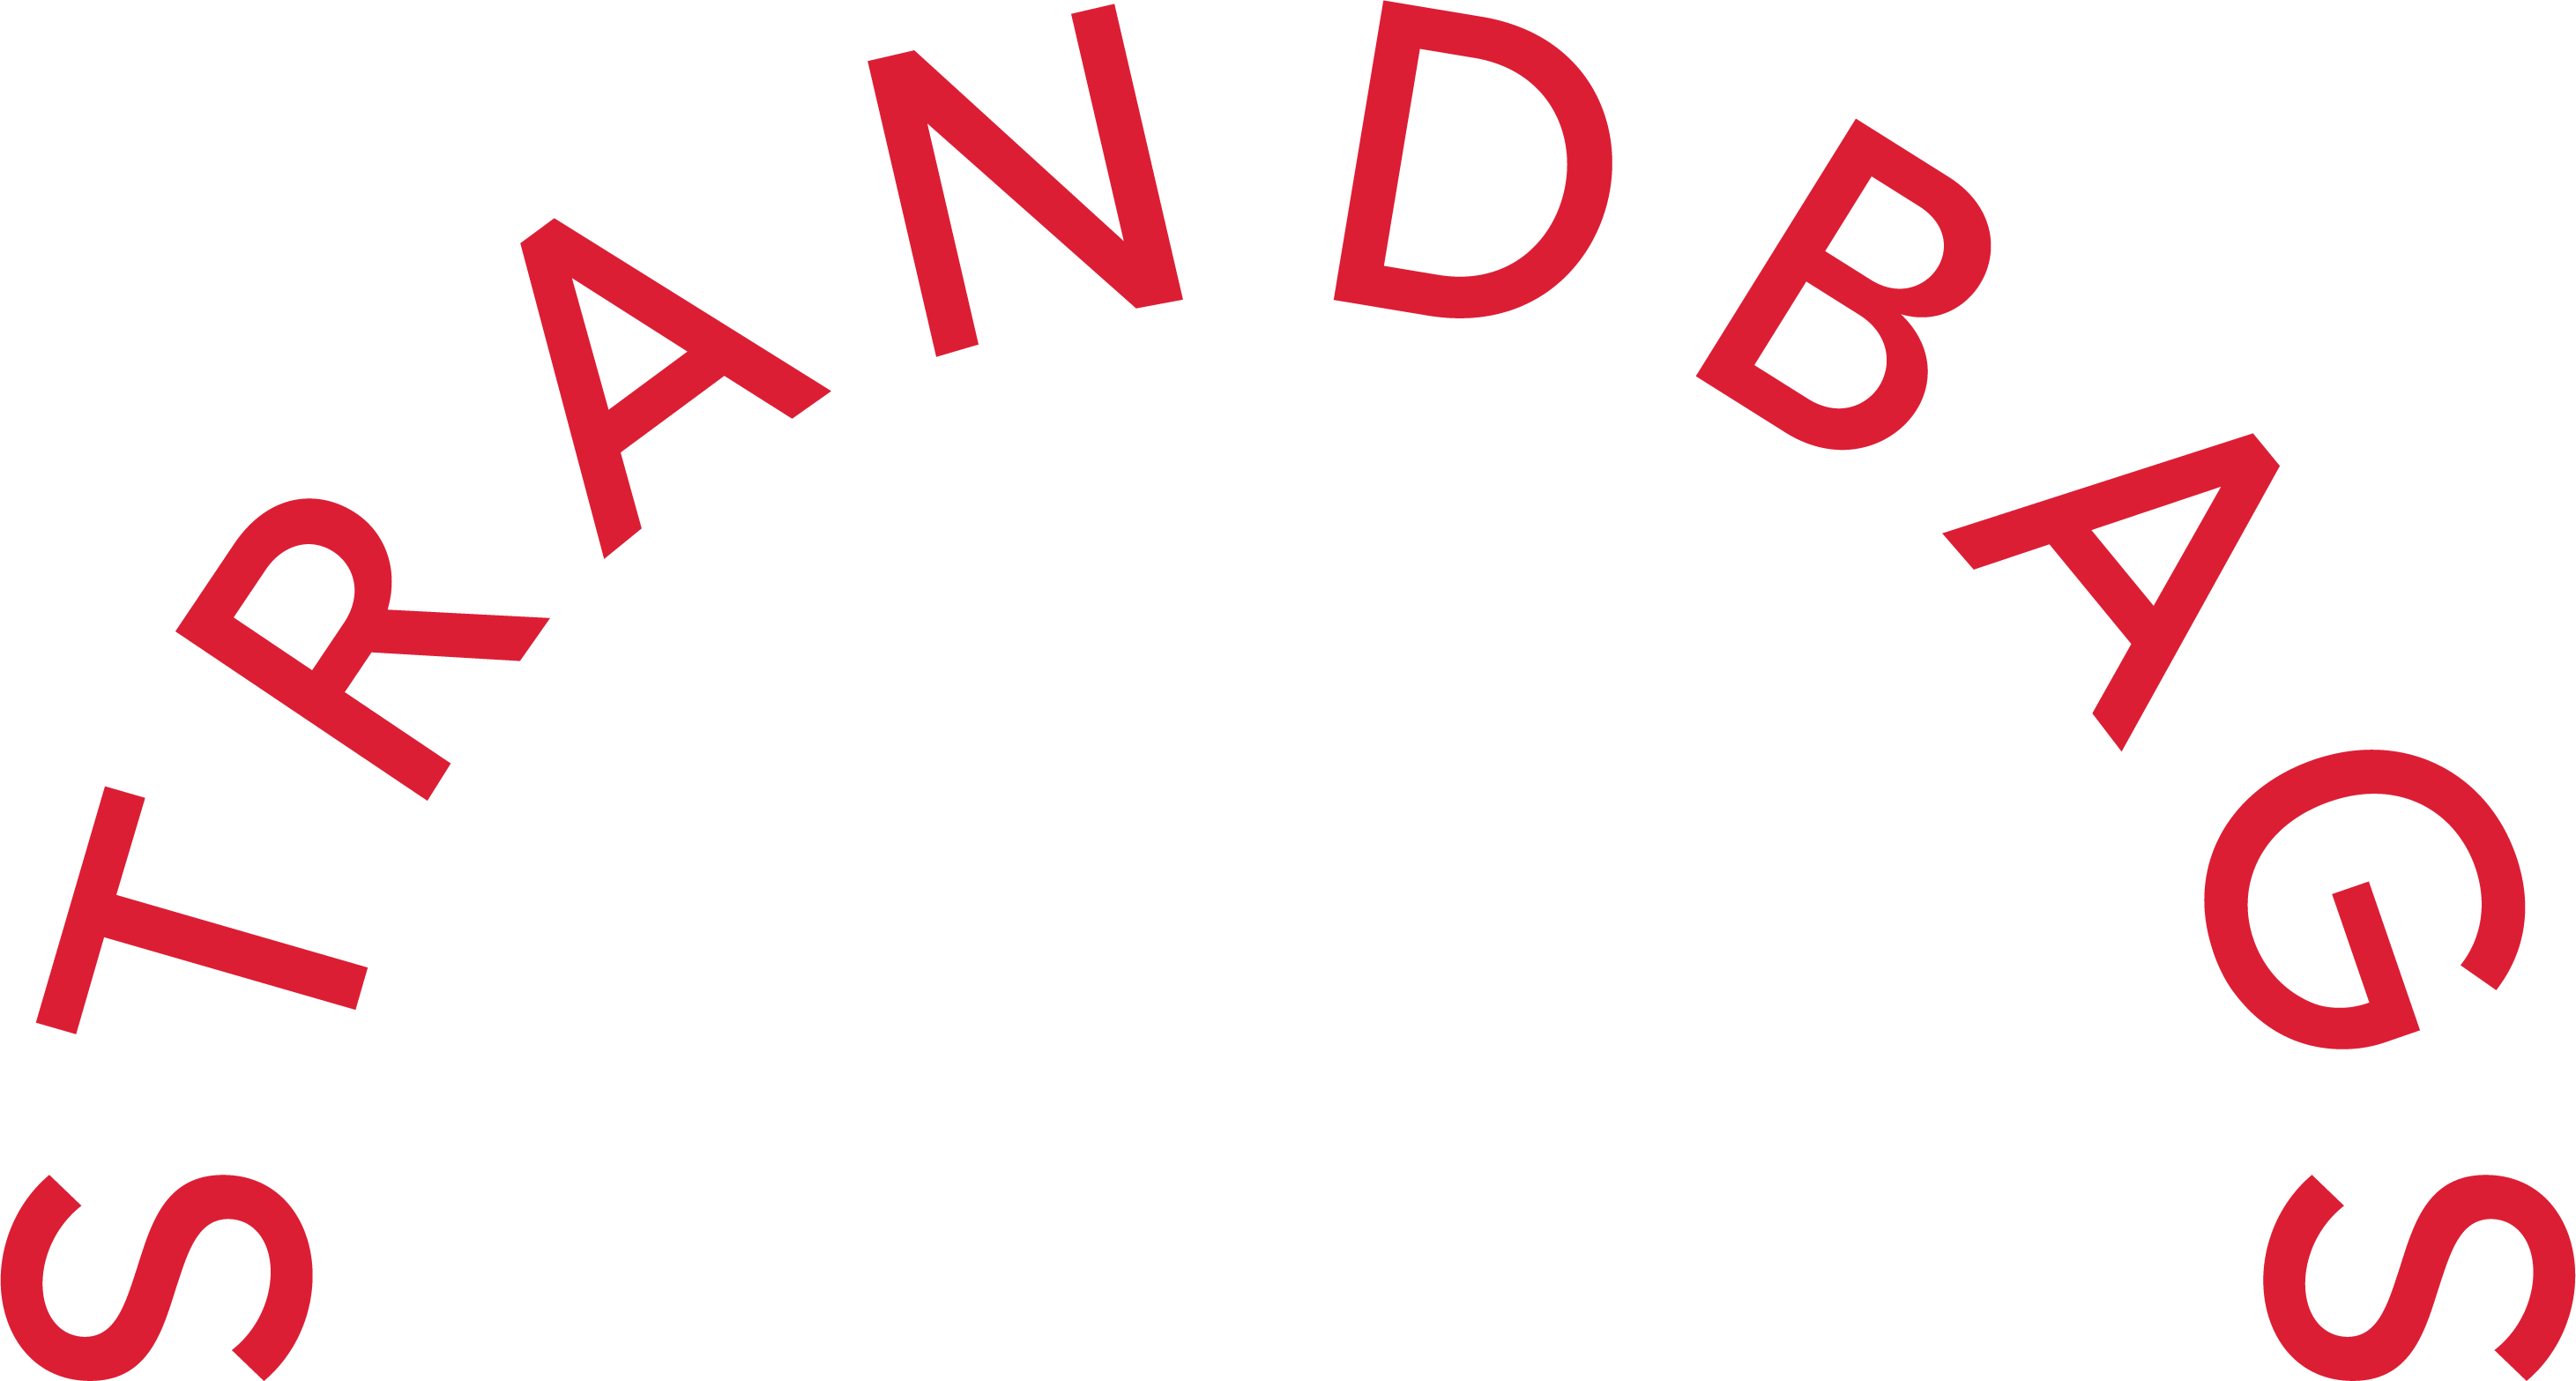 logo for Strandbags 